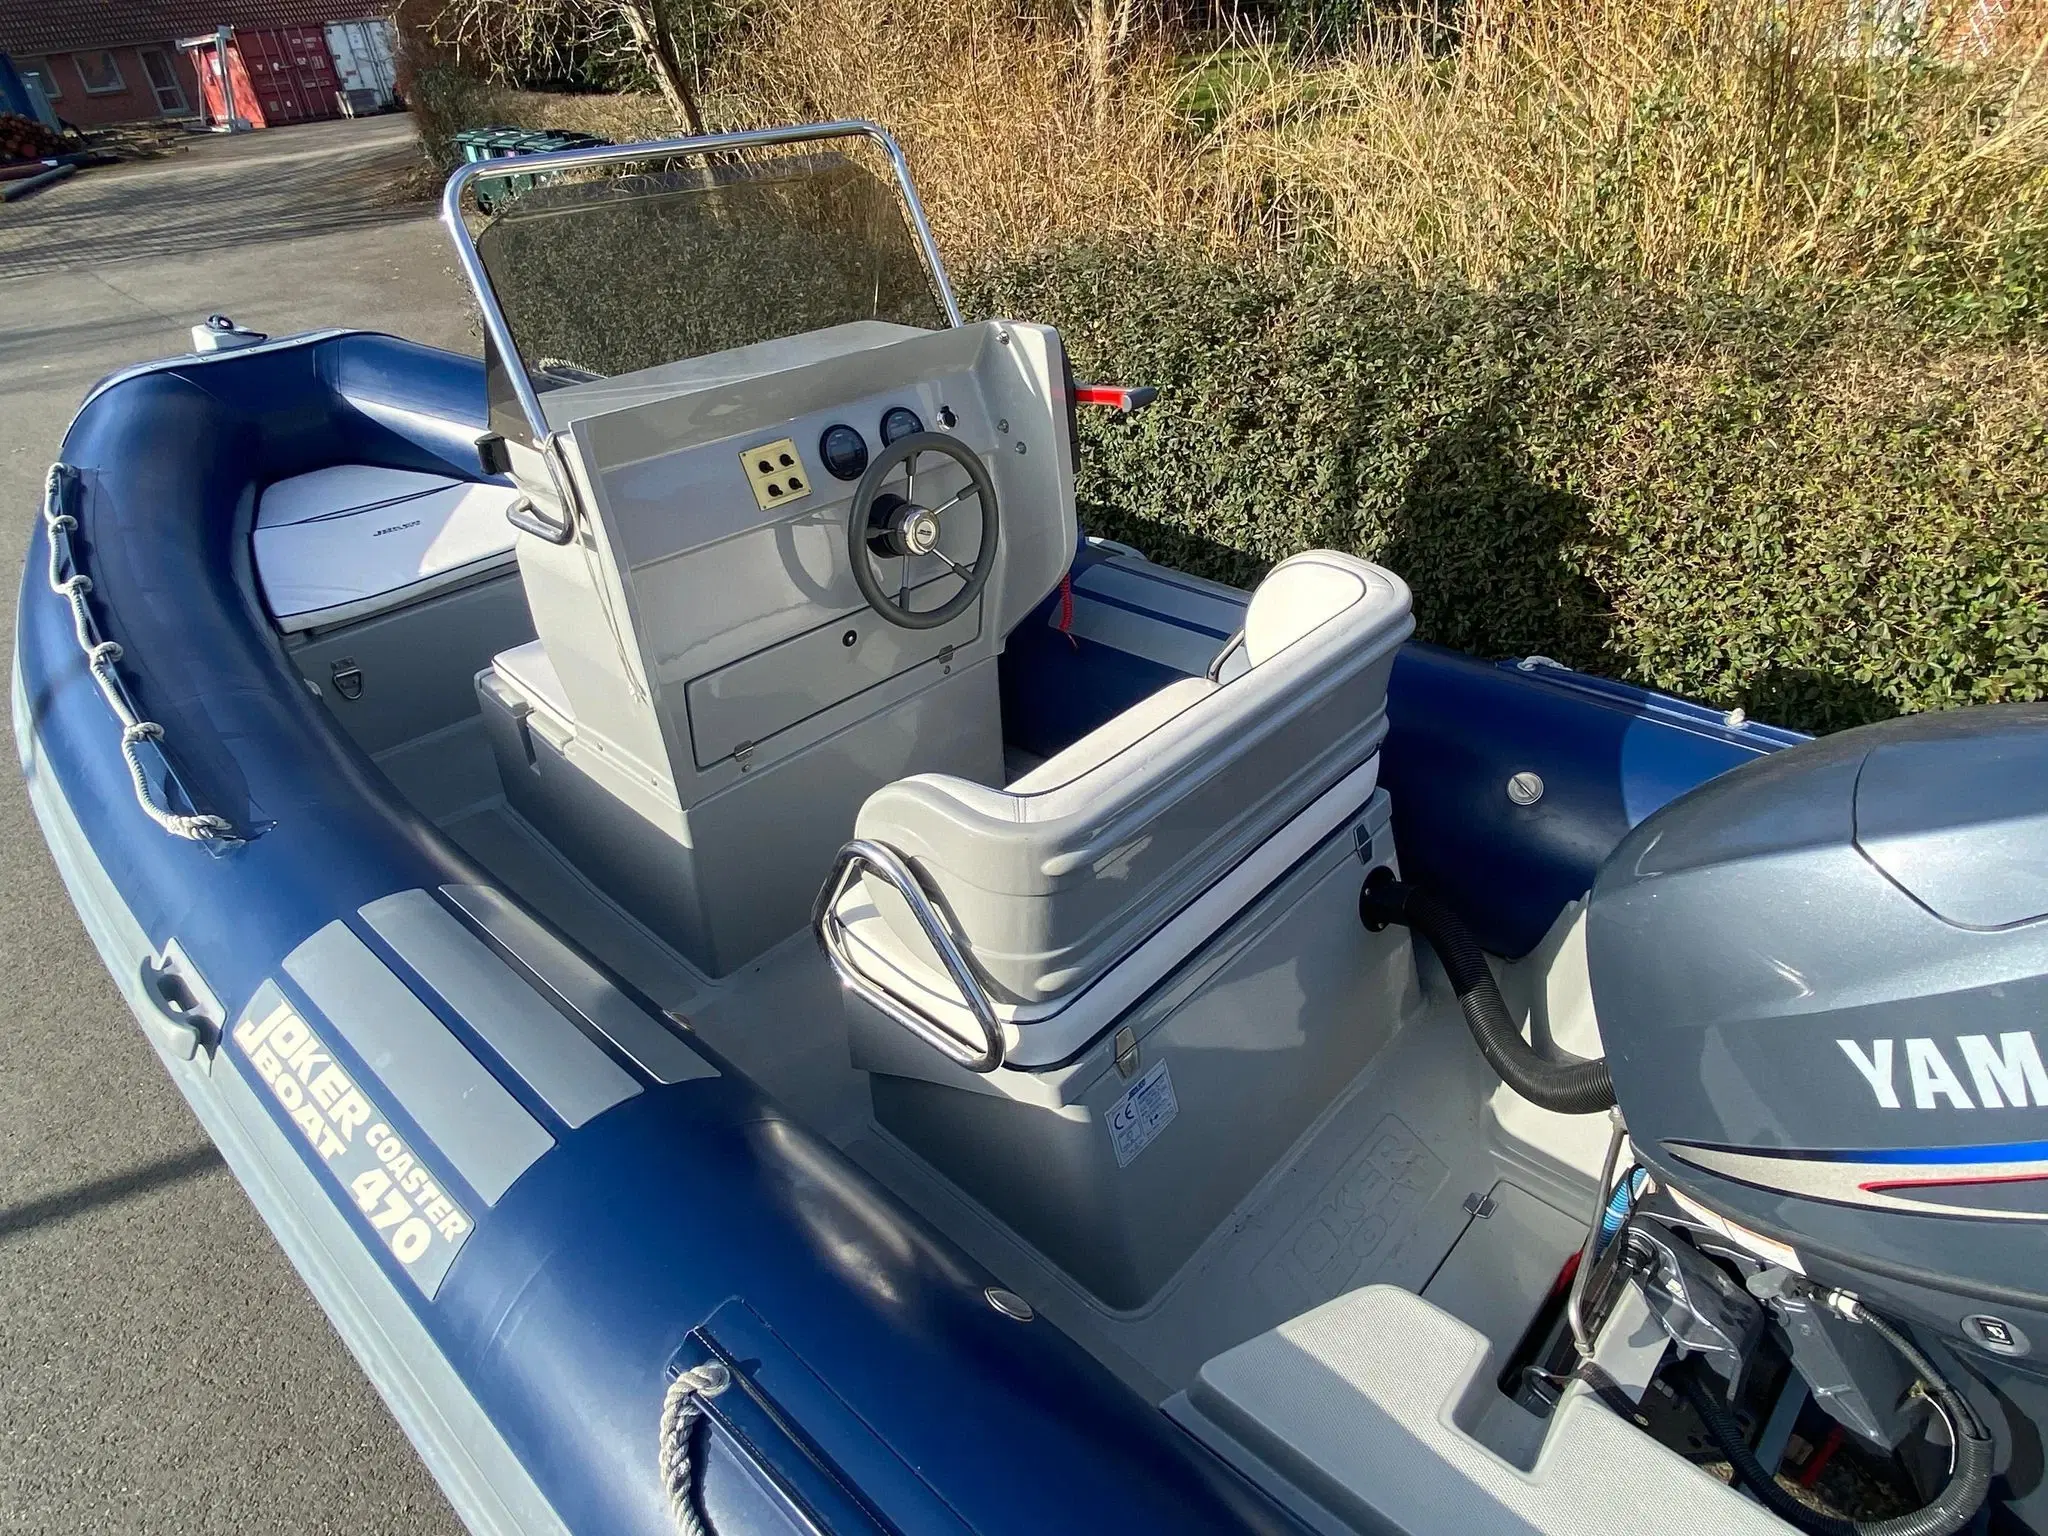 Joker Boat Coaster 470